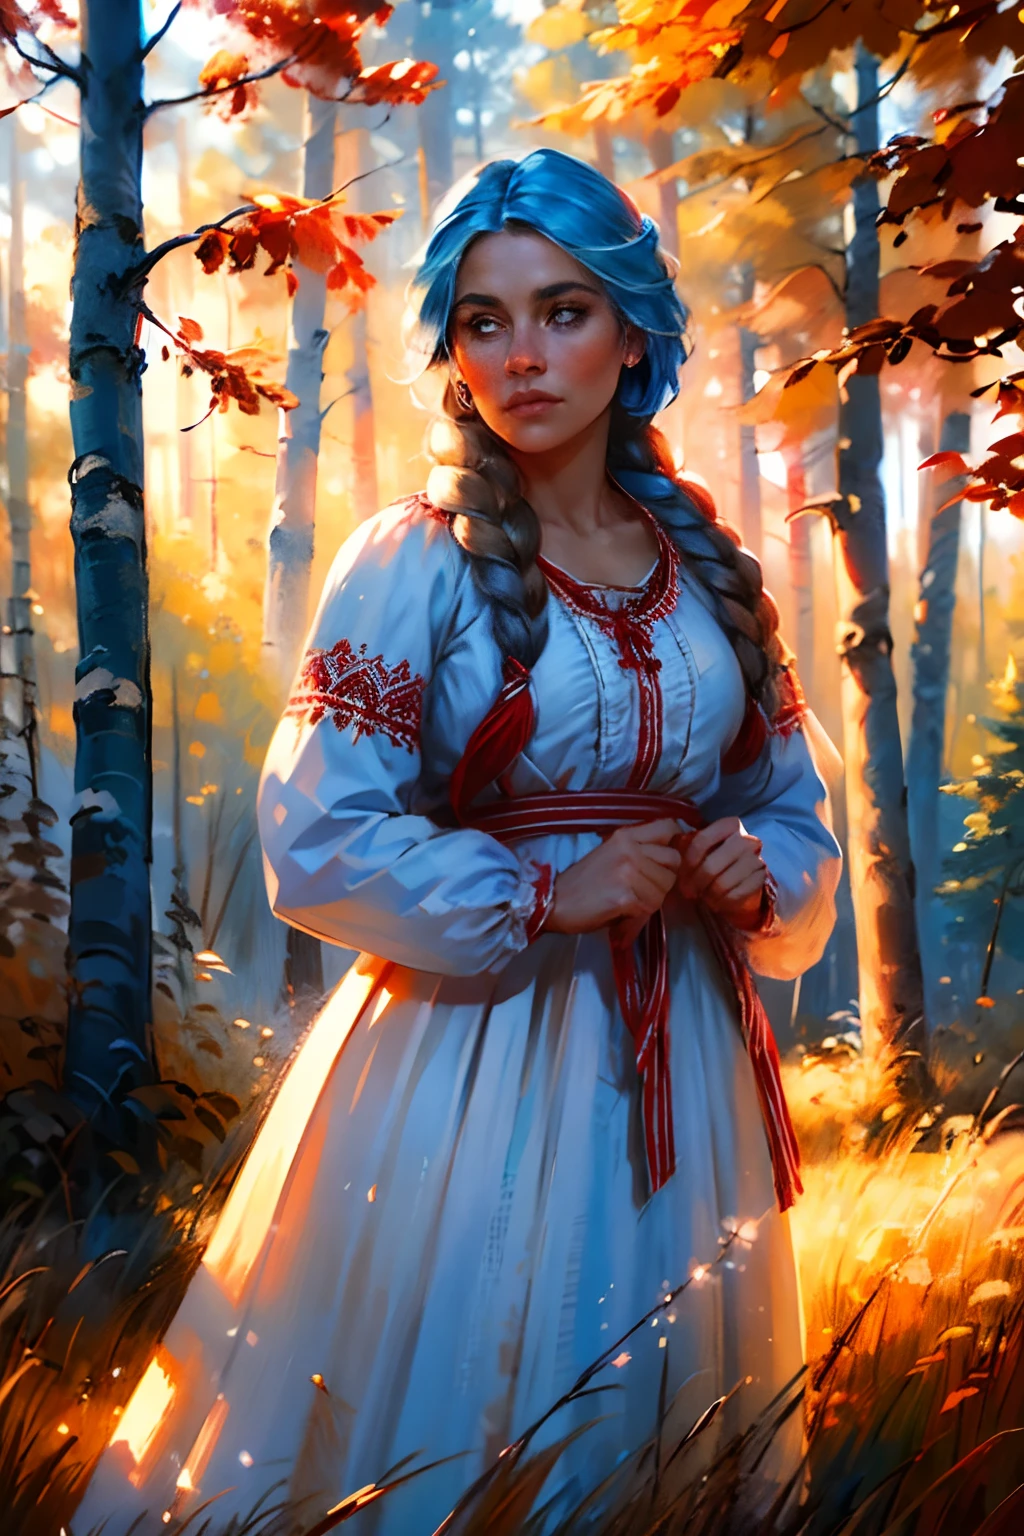 1소녀, 아름다운 아가씨, 헤어 라이트, 드리다, 파란 눈을 빛내다, 붉은색 러플 장식이 있는 흰색 드레스, 테두리, 앙플레인 에어, 러시아 숲, 나무 오두막, 자작나무와 키 큰 풀, 현실적인